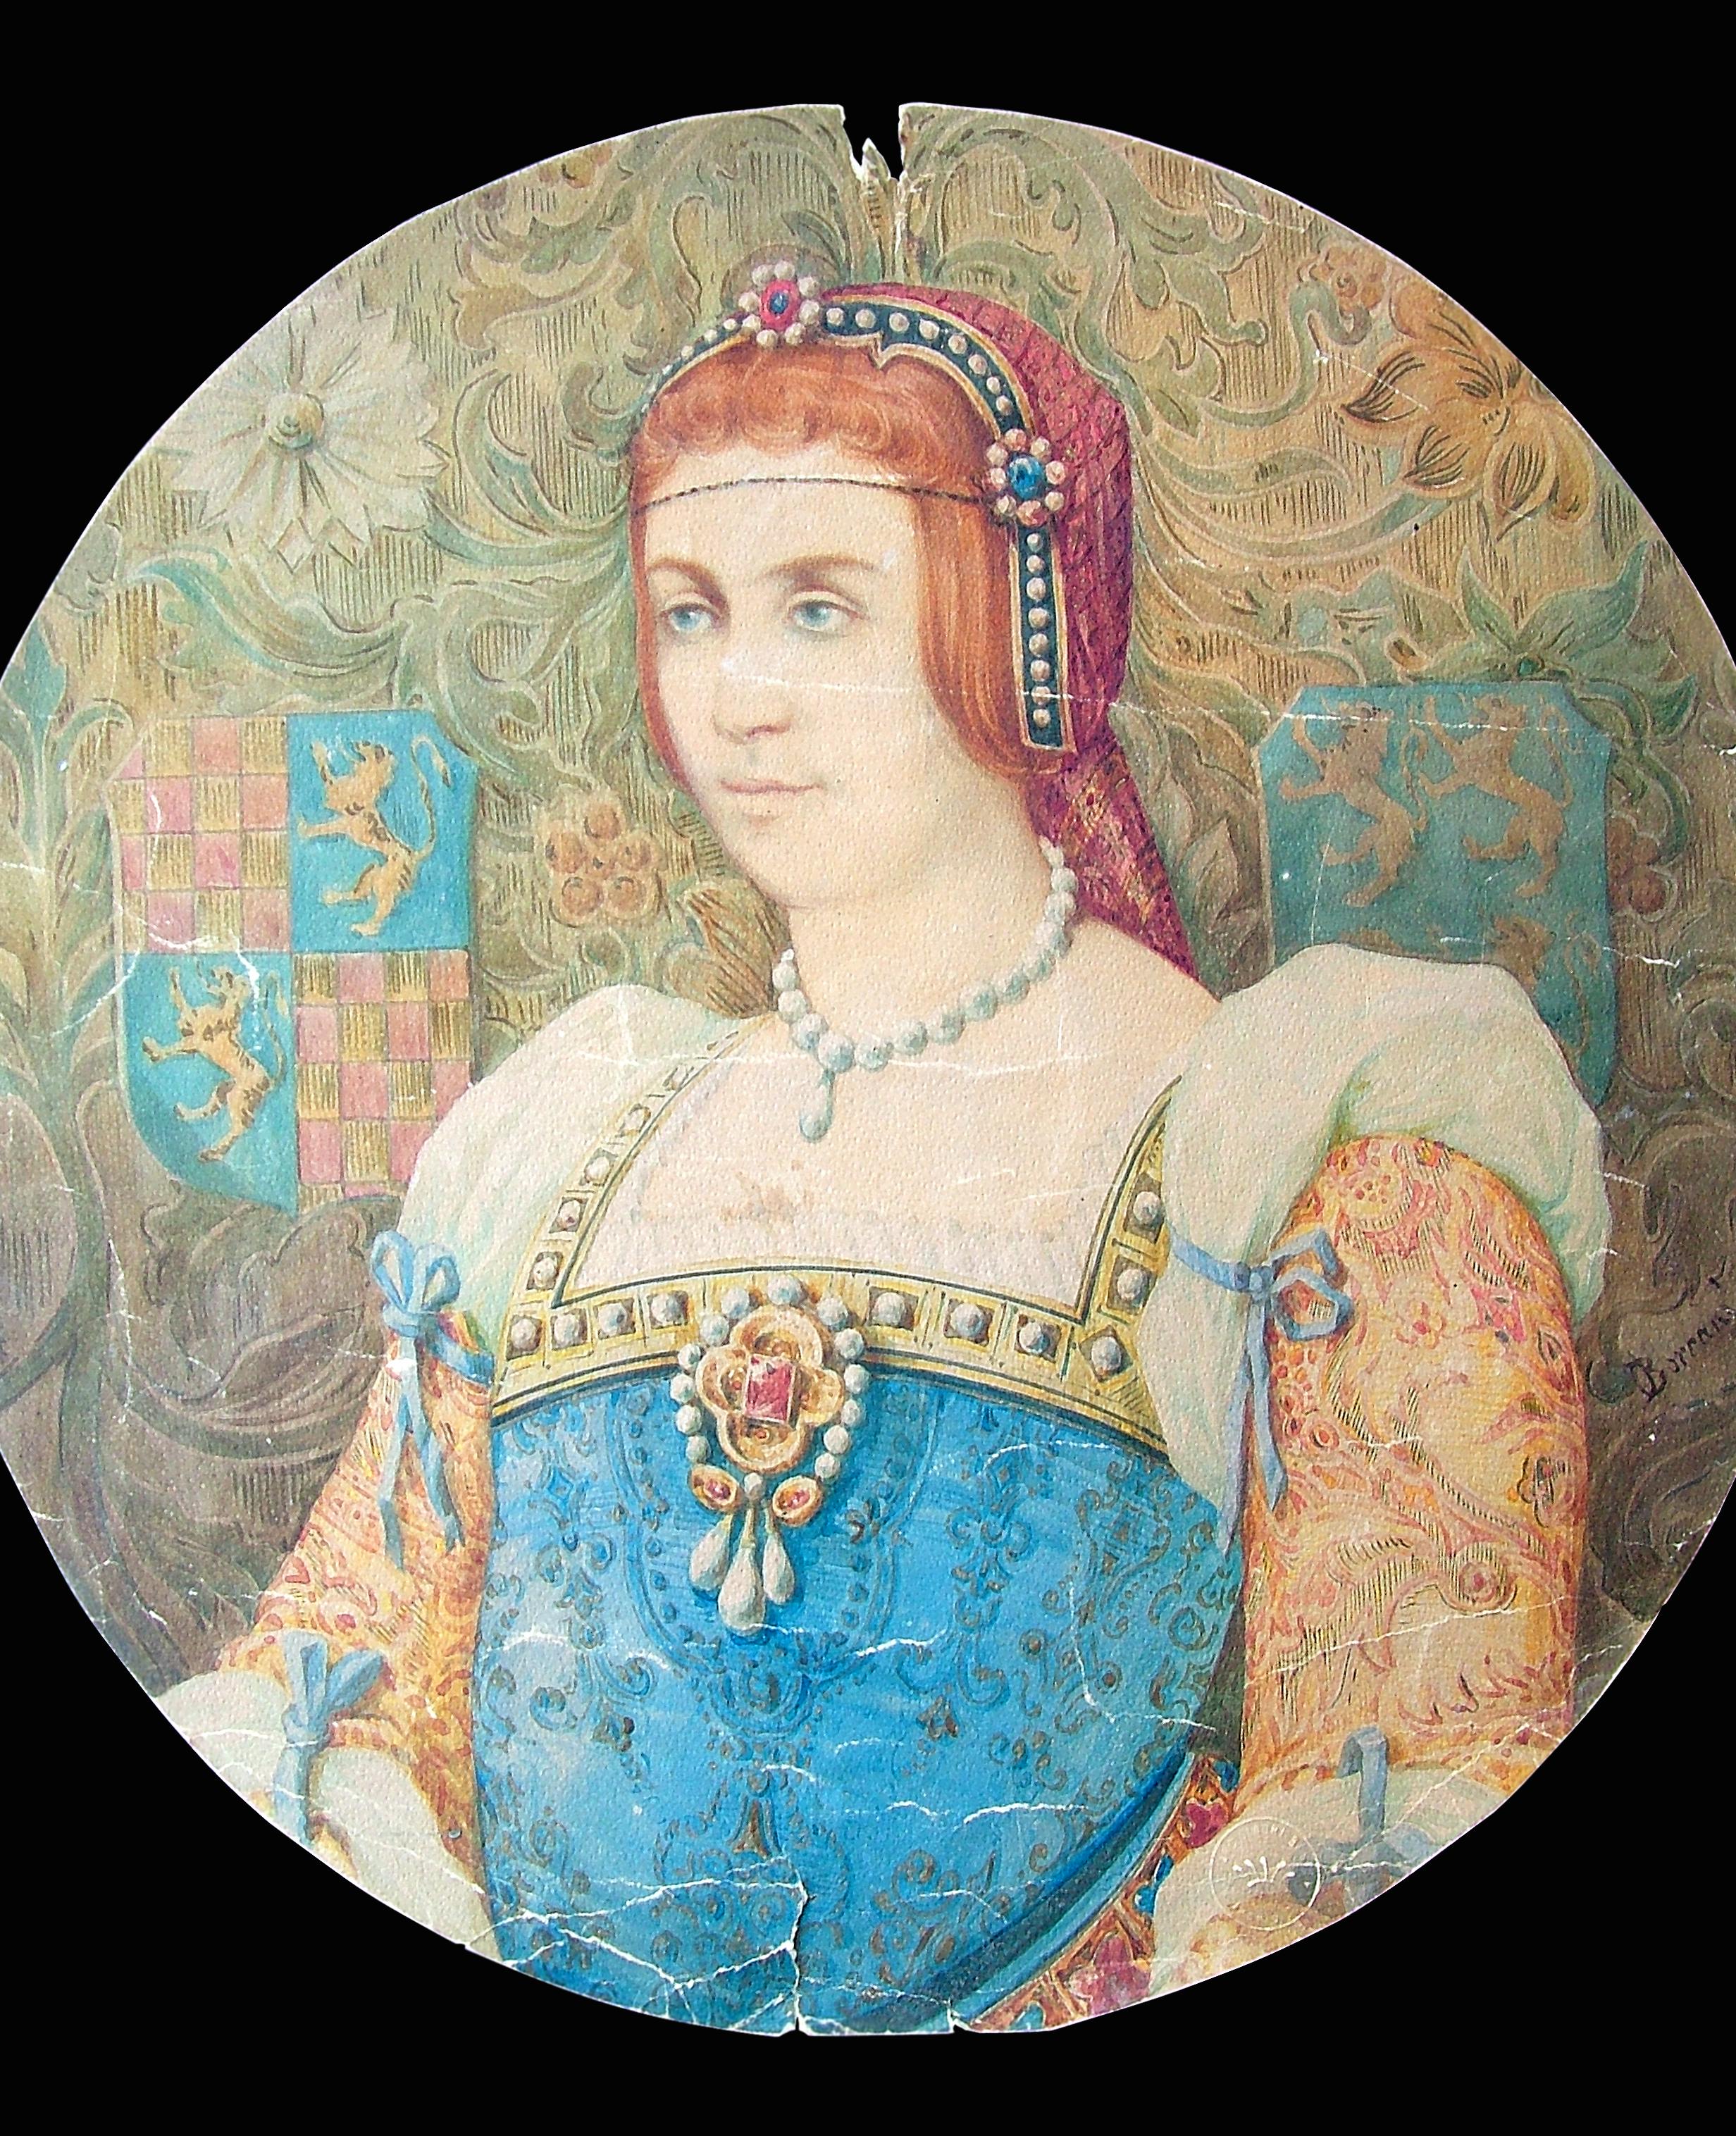 Dipinto che ritrae una donna in abiti principeschi, con stemmi sullo sfondo